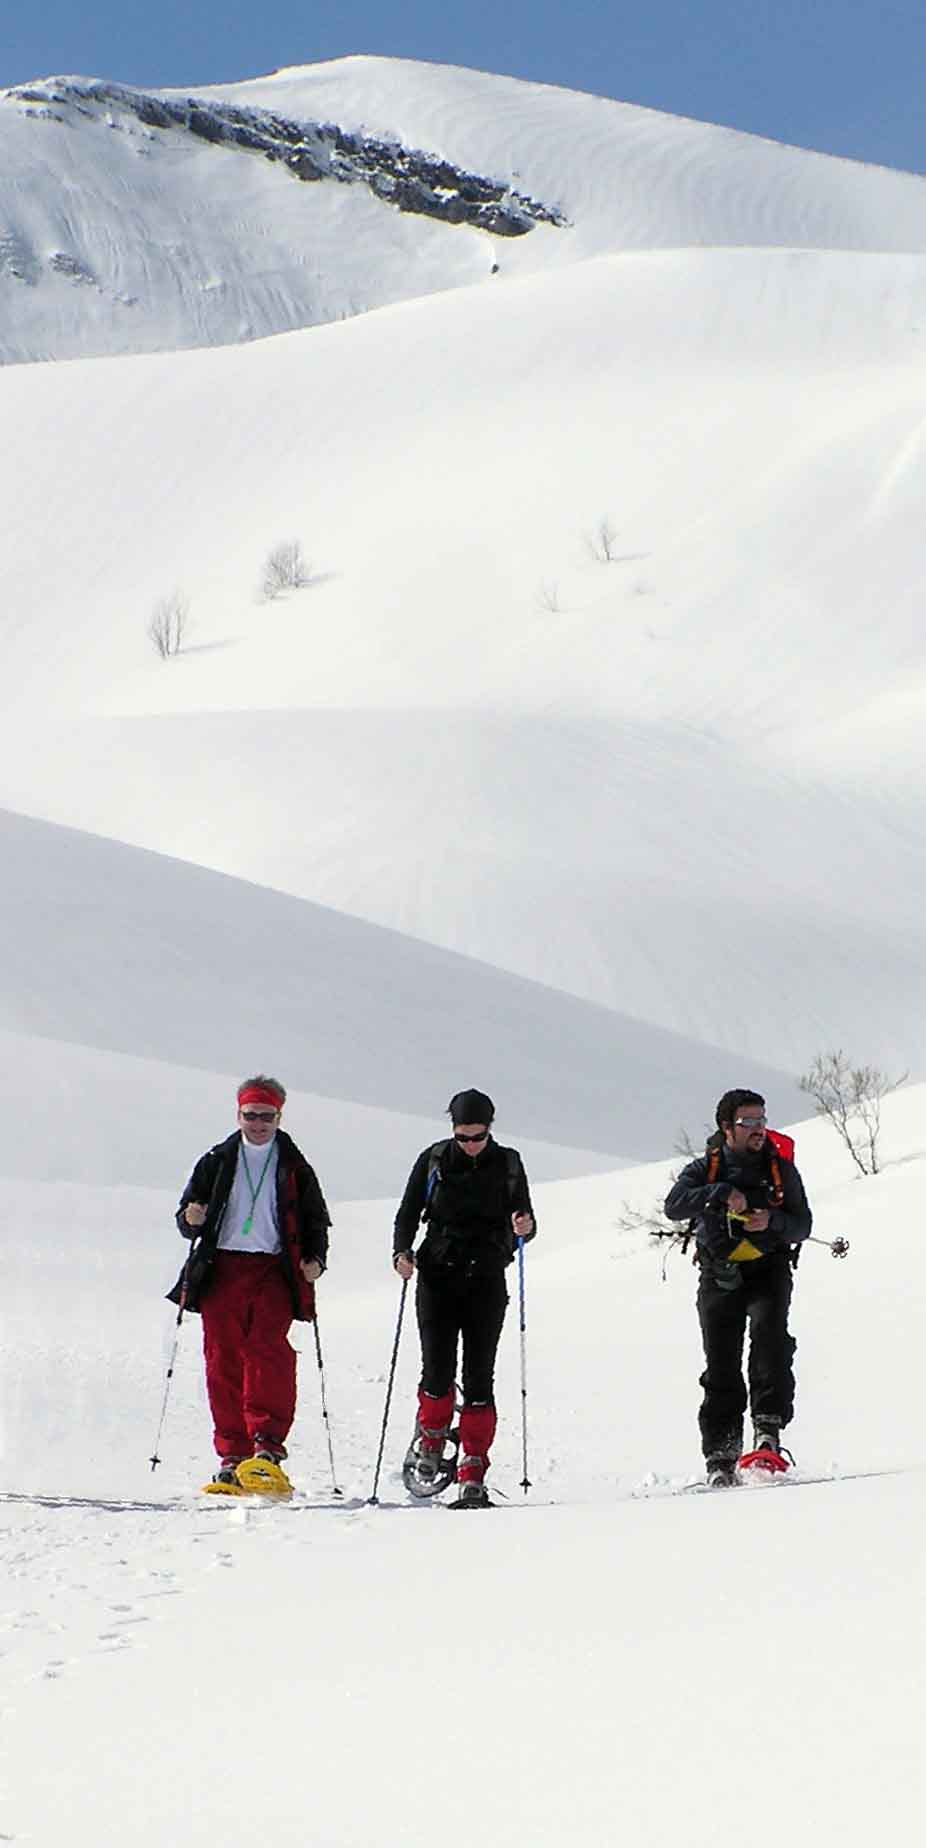 Ruta con raquetas de nieve por la montaña Leonesa, España - Hommter